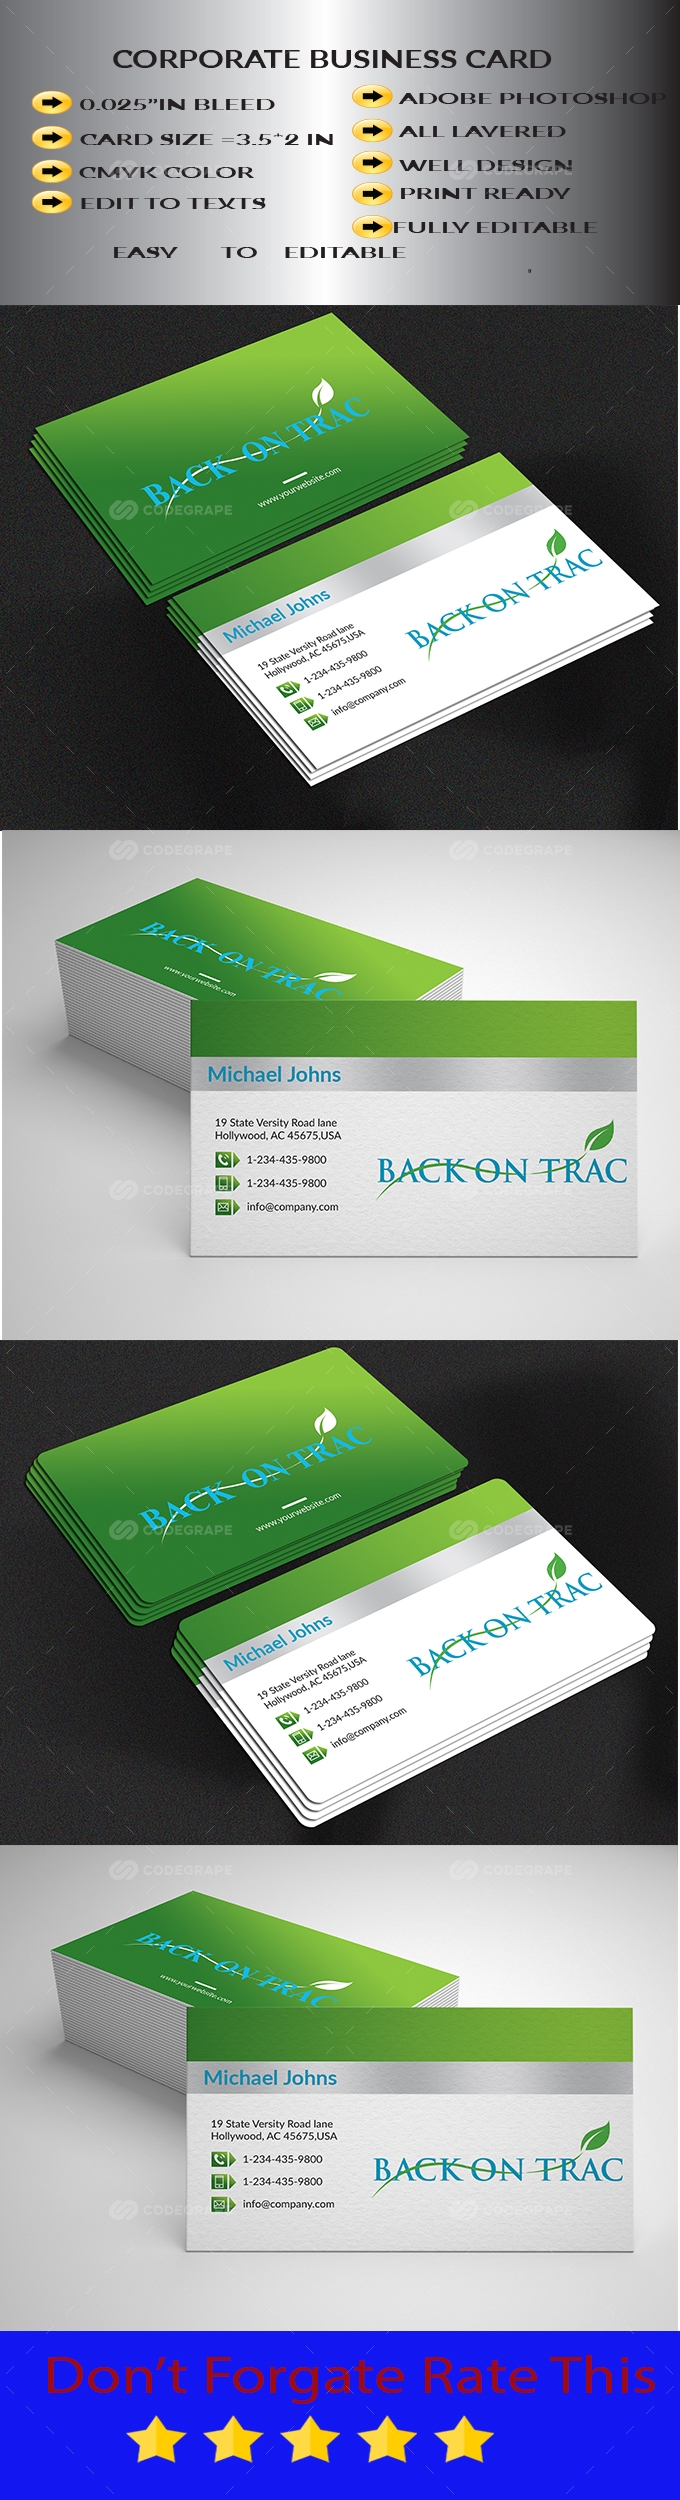 Coporate Business card